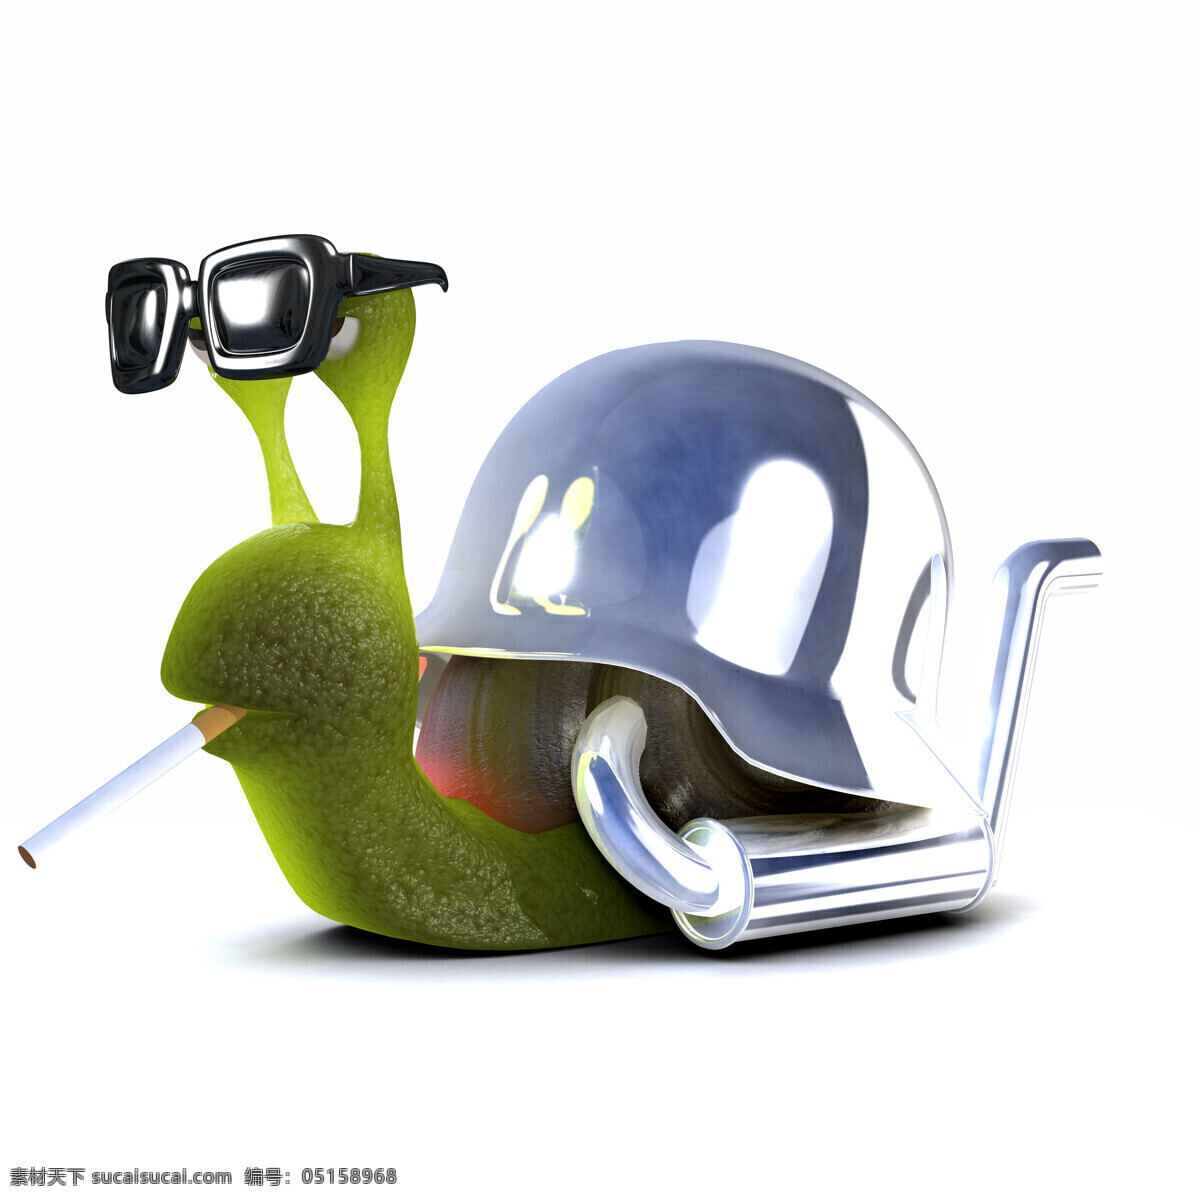 戴 墨镜 抽烟 的卡 通 蜗牛 卡通蜗牛 卡通形象 绿色蜗牛 香烟 卡通动物 漫画插画 陆地动物 生物世界 白色